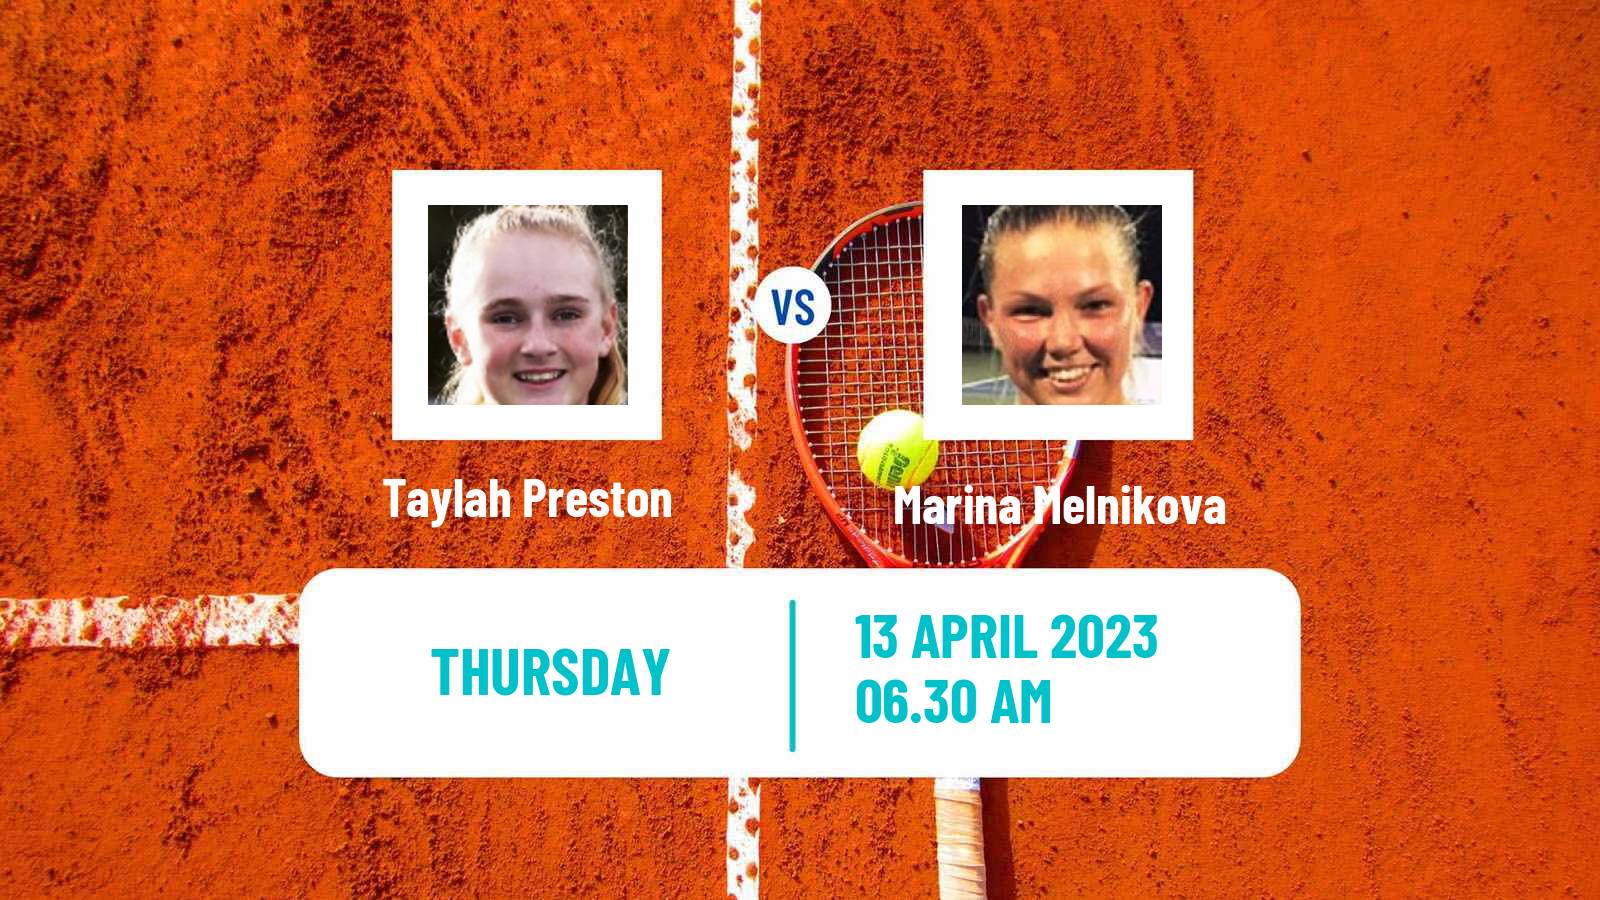 Tennis ITF Tournaments Taylah Preston - Marina Melnikova